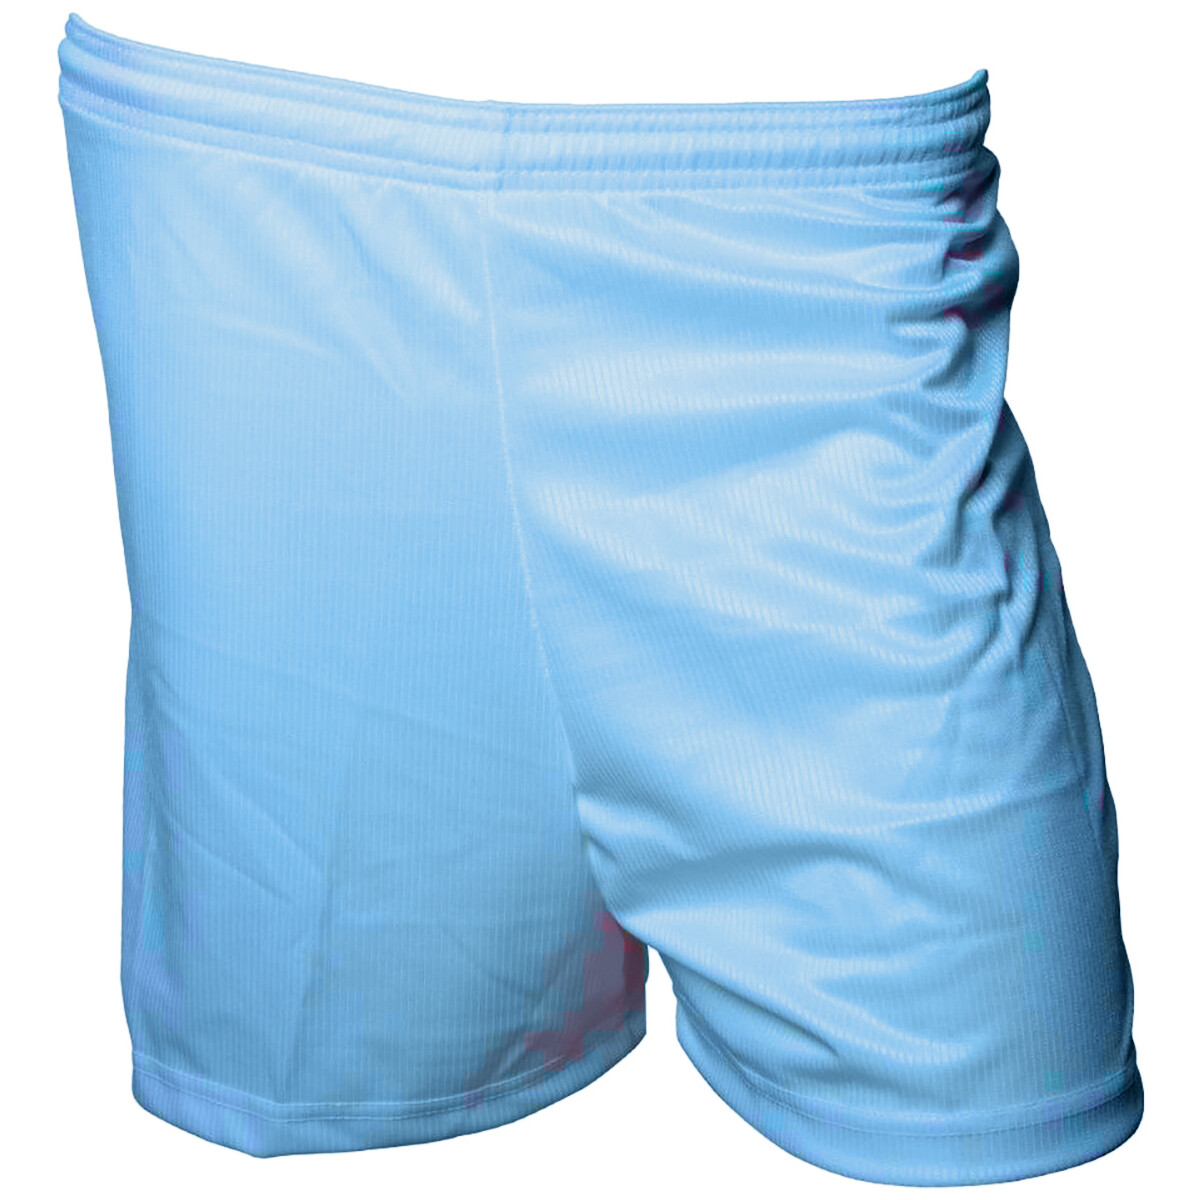 Abbigliamento Shorts / Bermuda Precision RD124 Blu